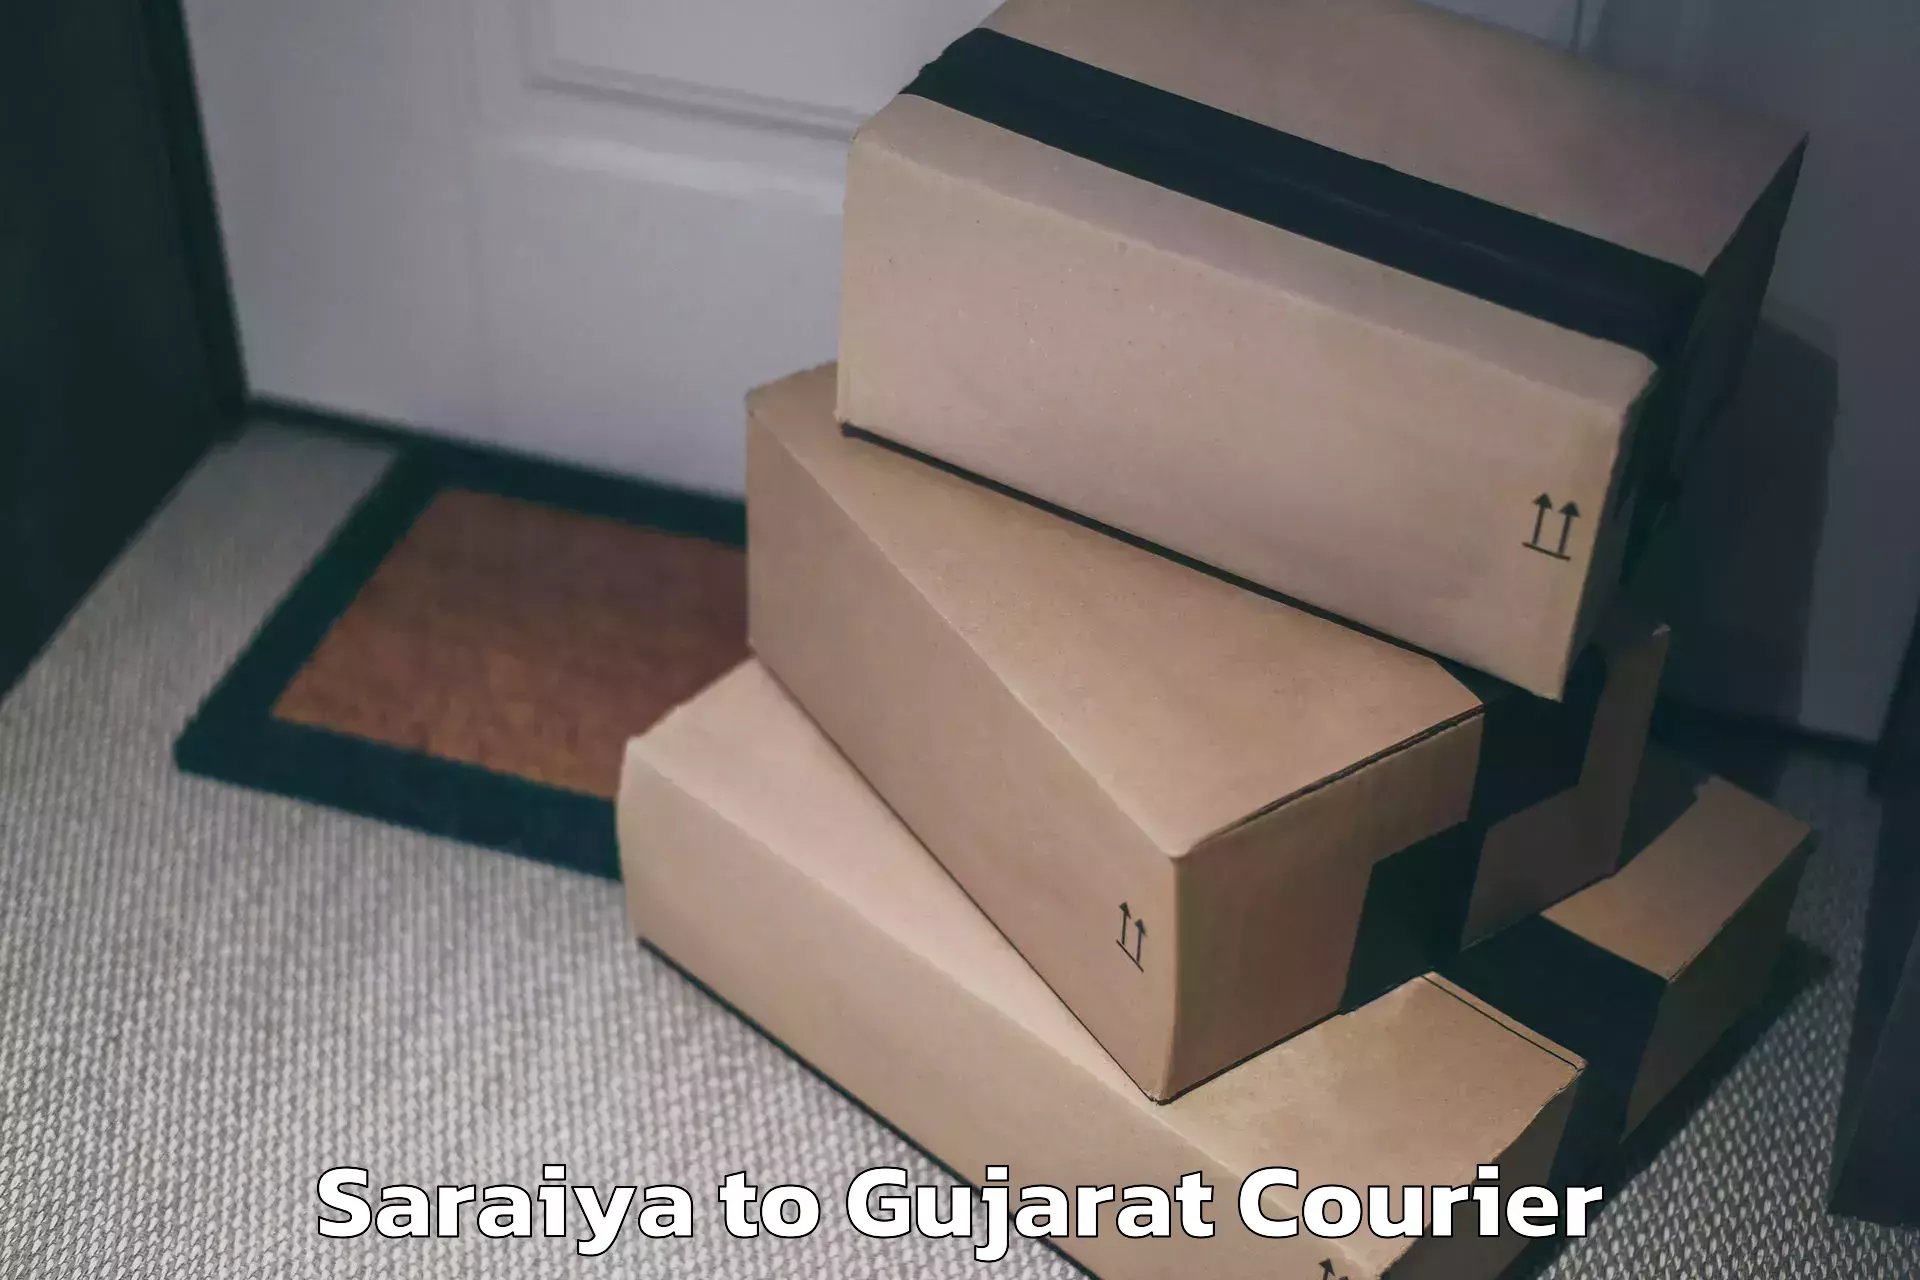 Luggage transit service Saraiya to Gujarat